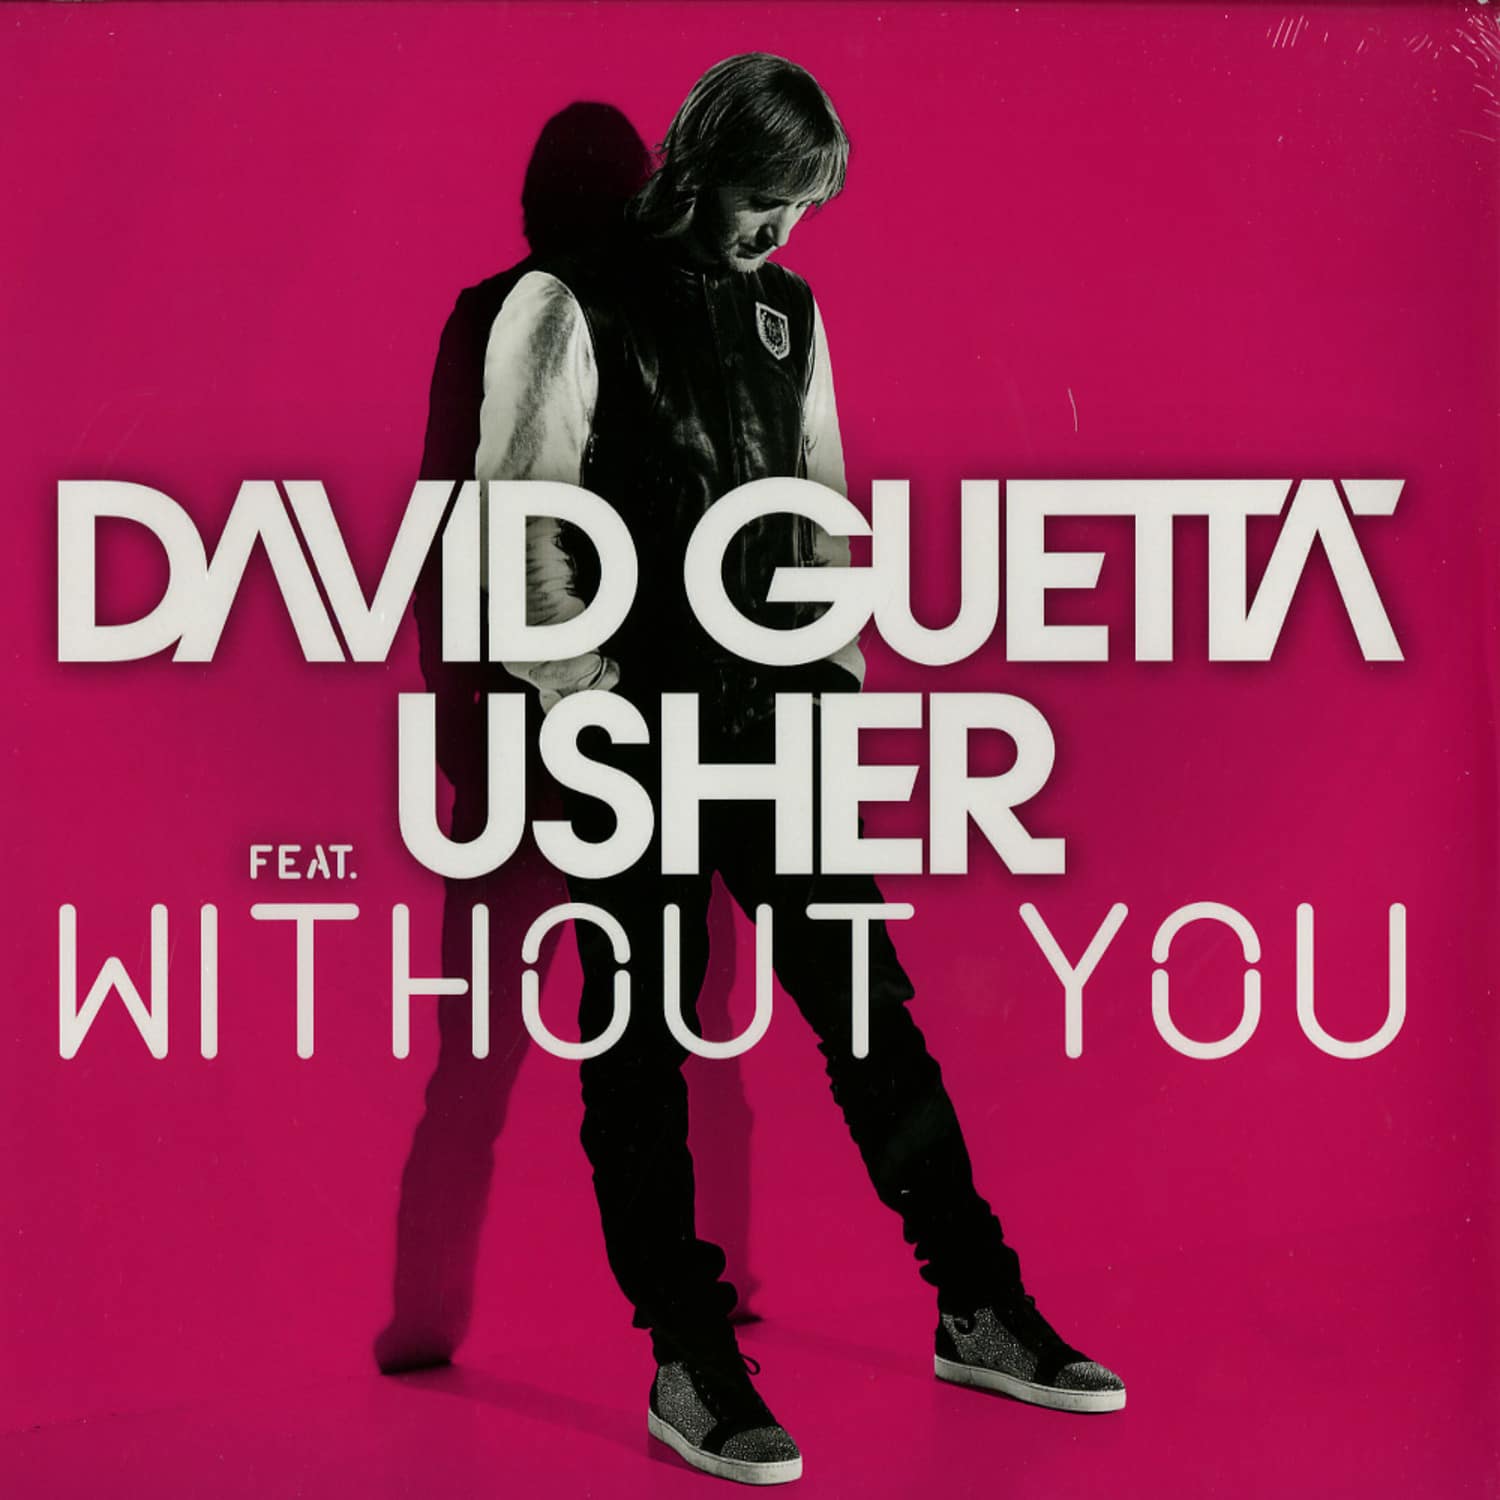 David Guetta feat Usher - WITHOU YOU